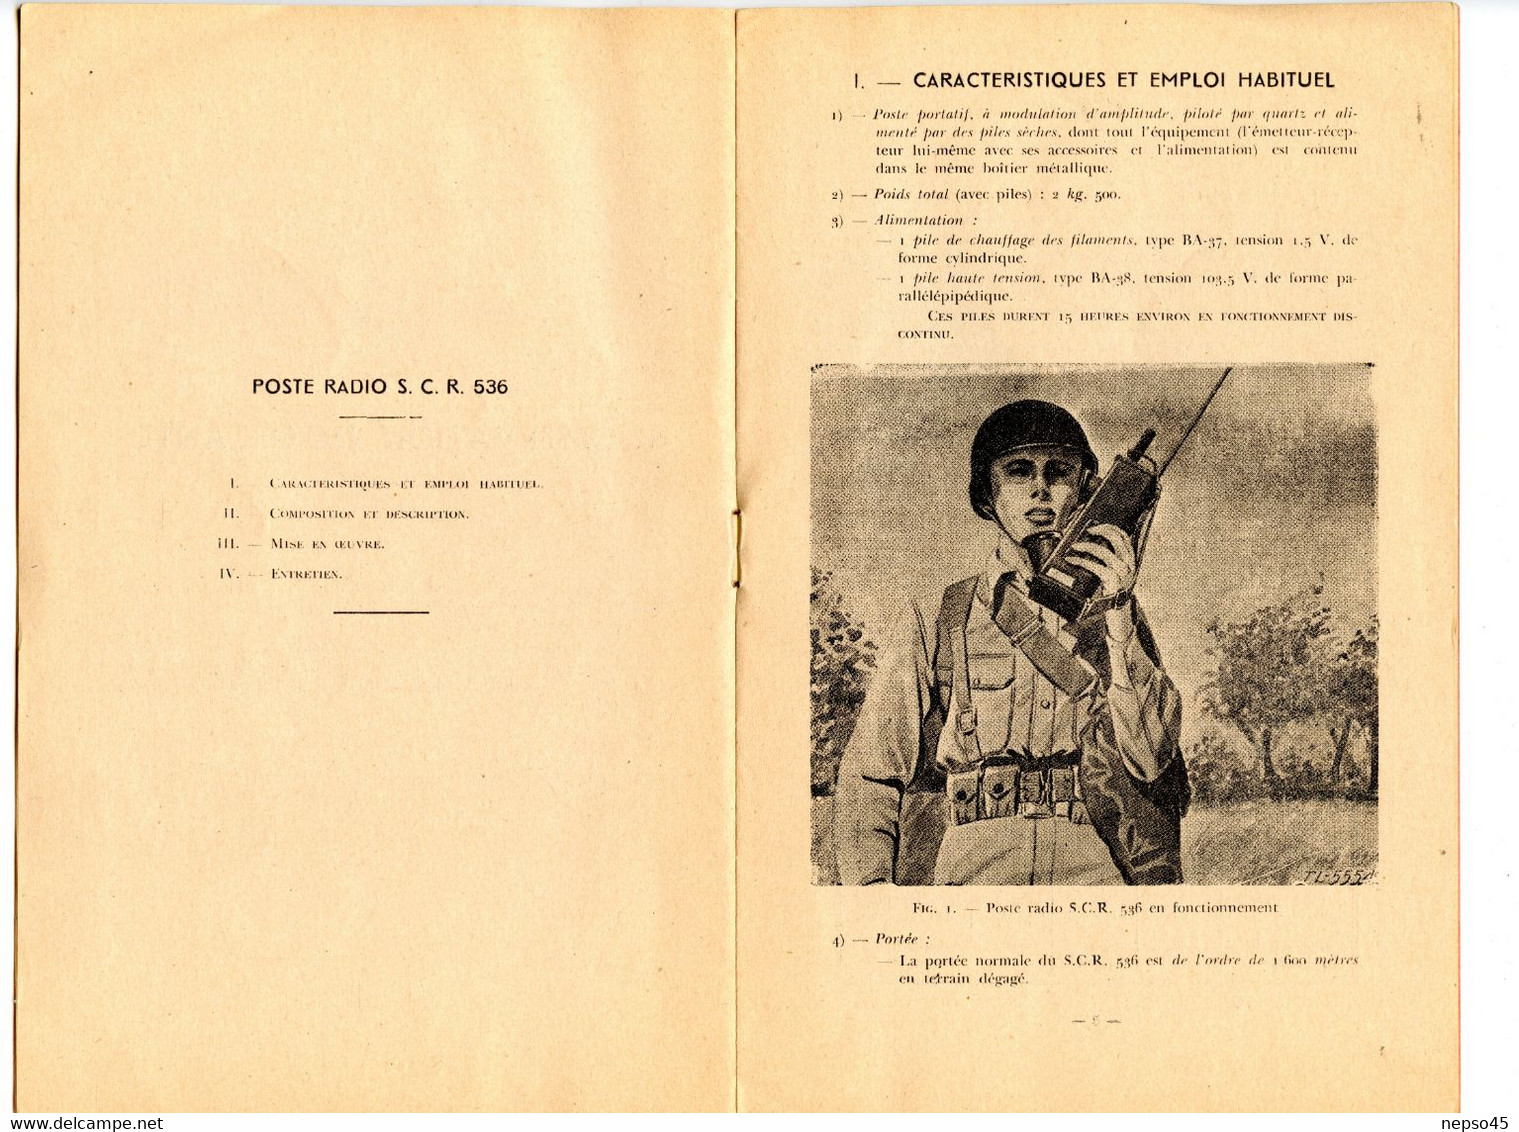 Poste Radio S.C.R. 536.notice d'emploi.Ecole formation d'officiers d'active.Coetquidan 1951.Librairie militaire St-Cyr.